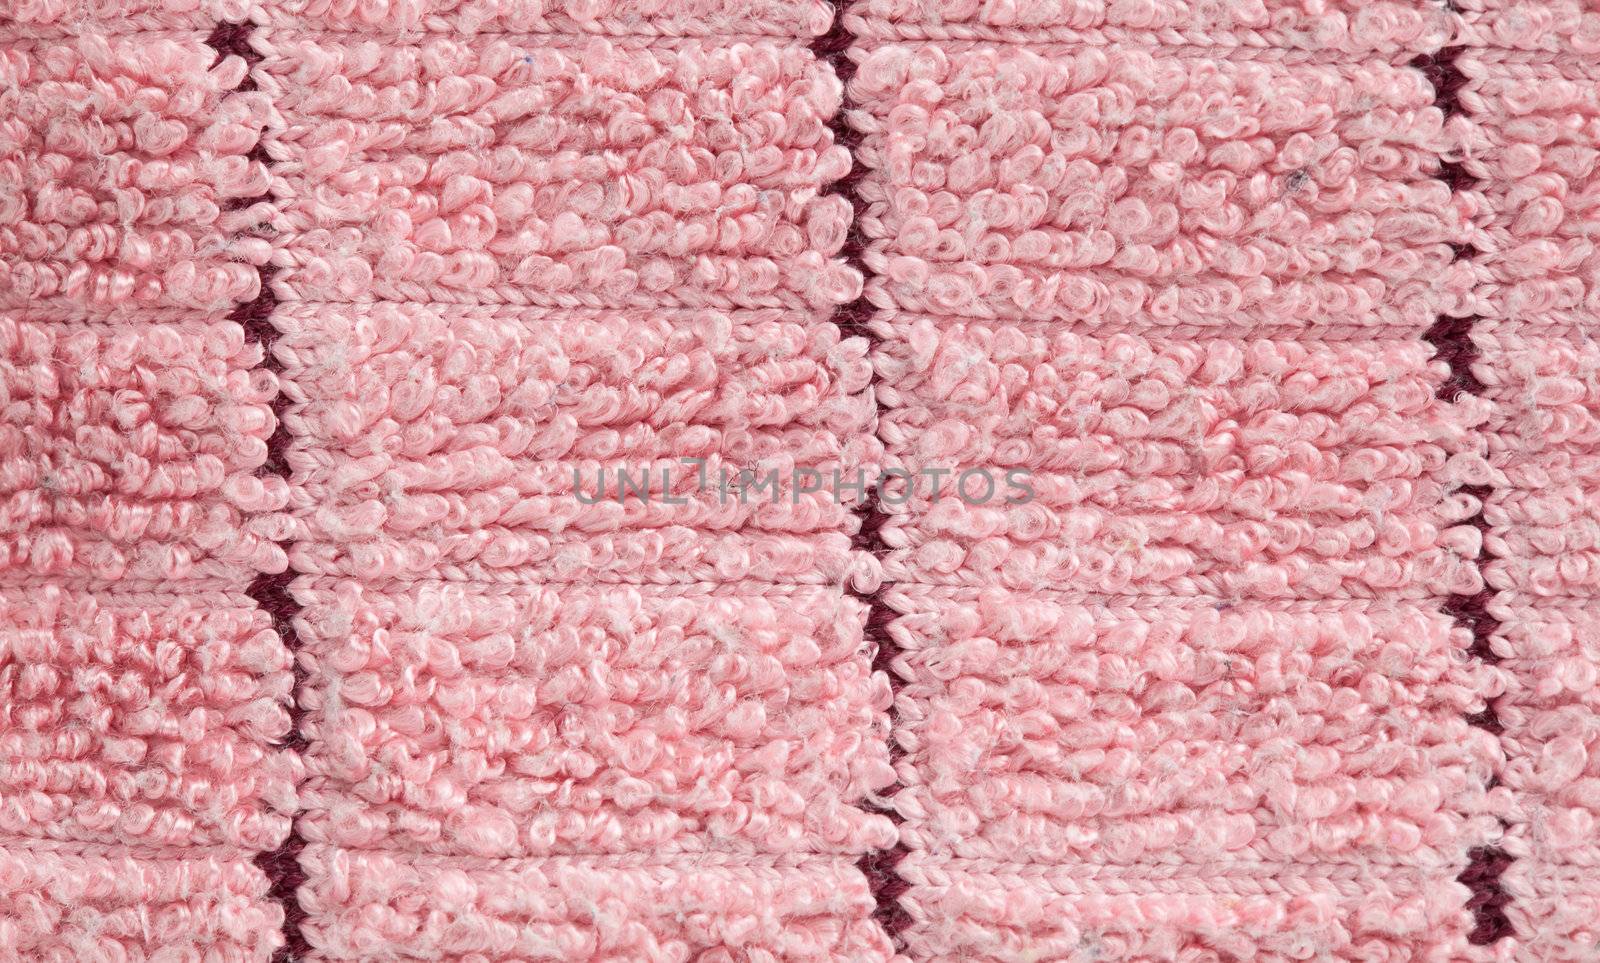 Nice wool texture by DphiMan